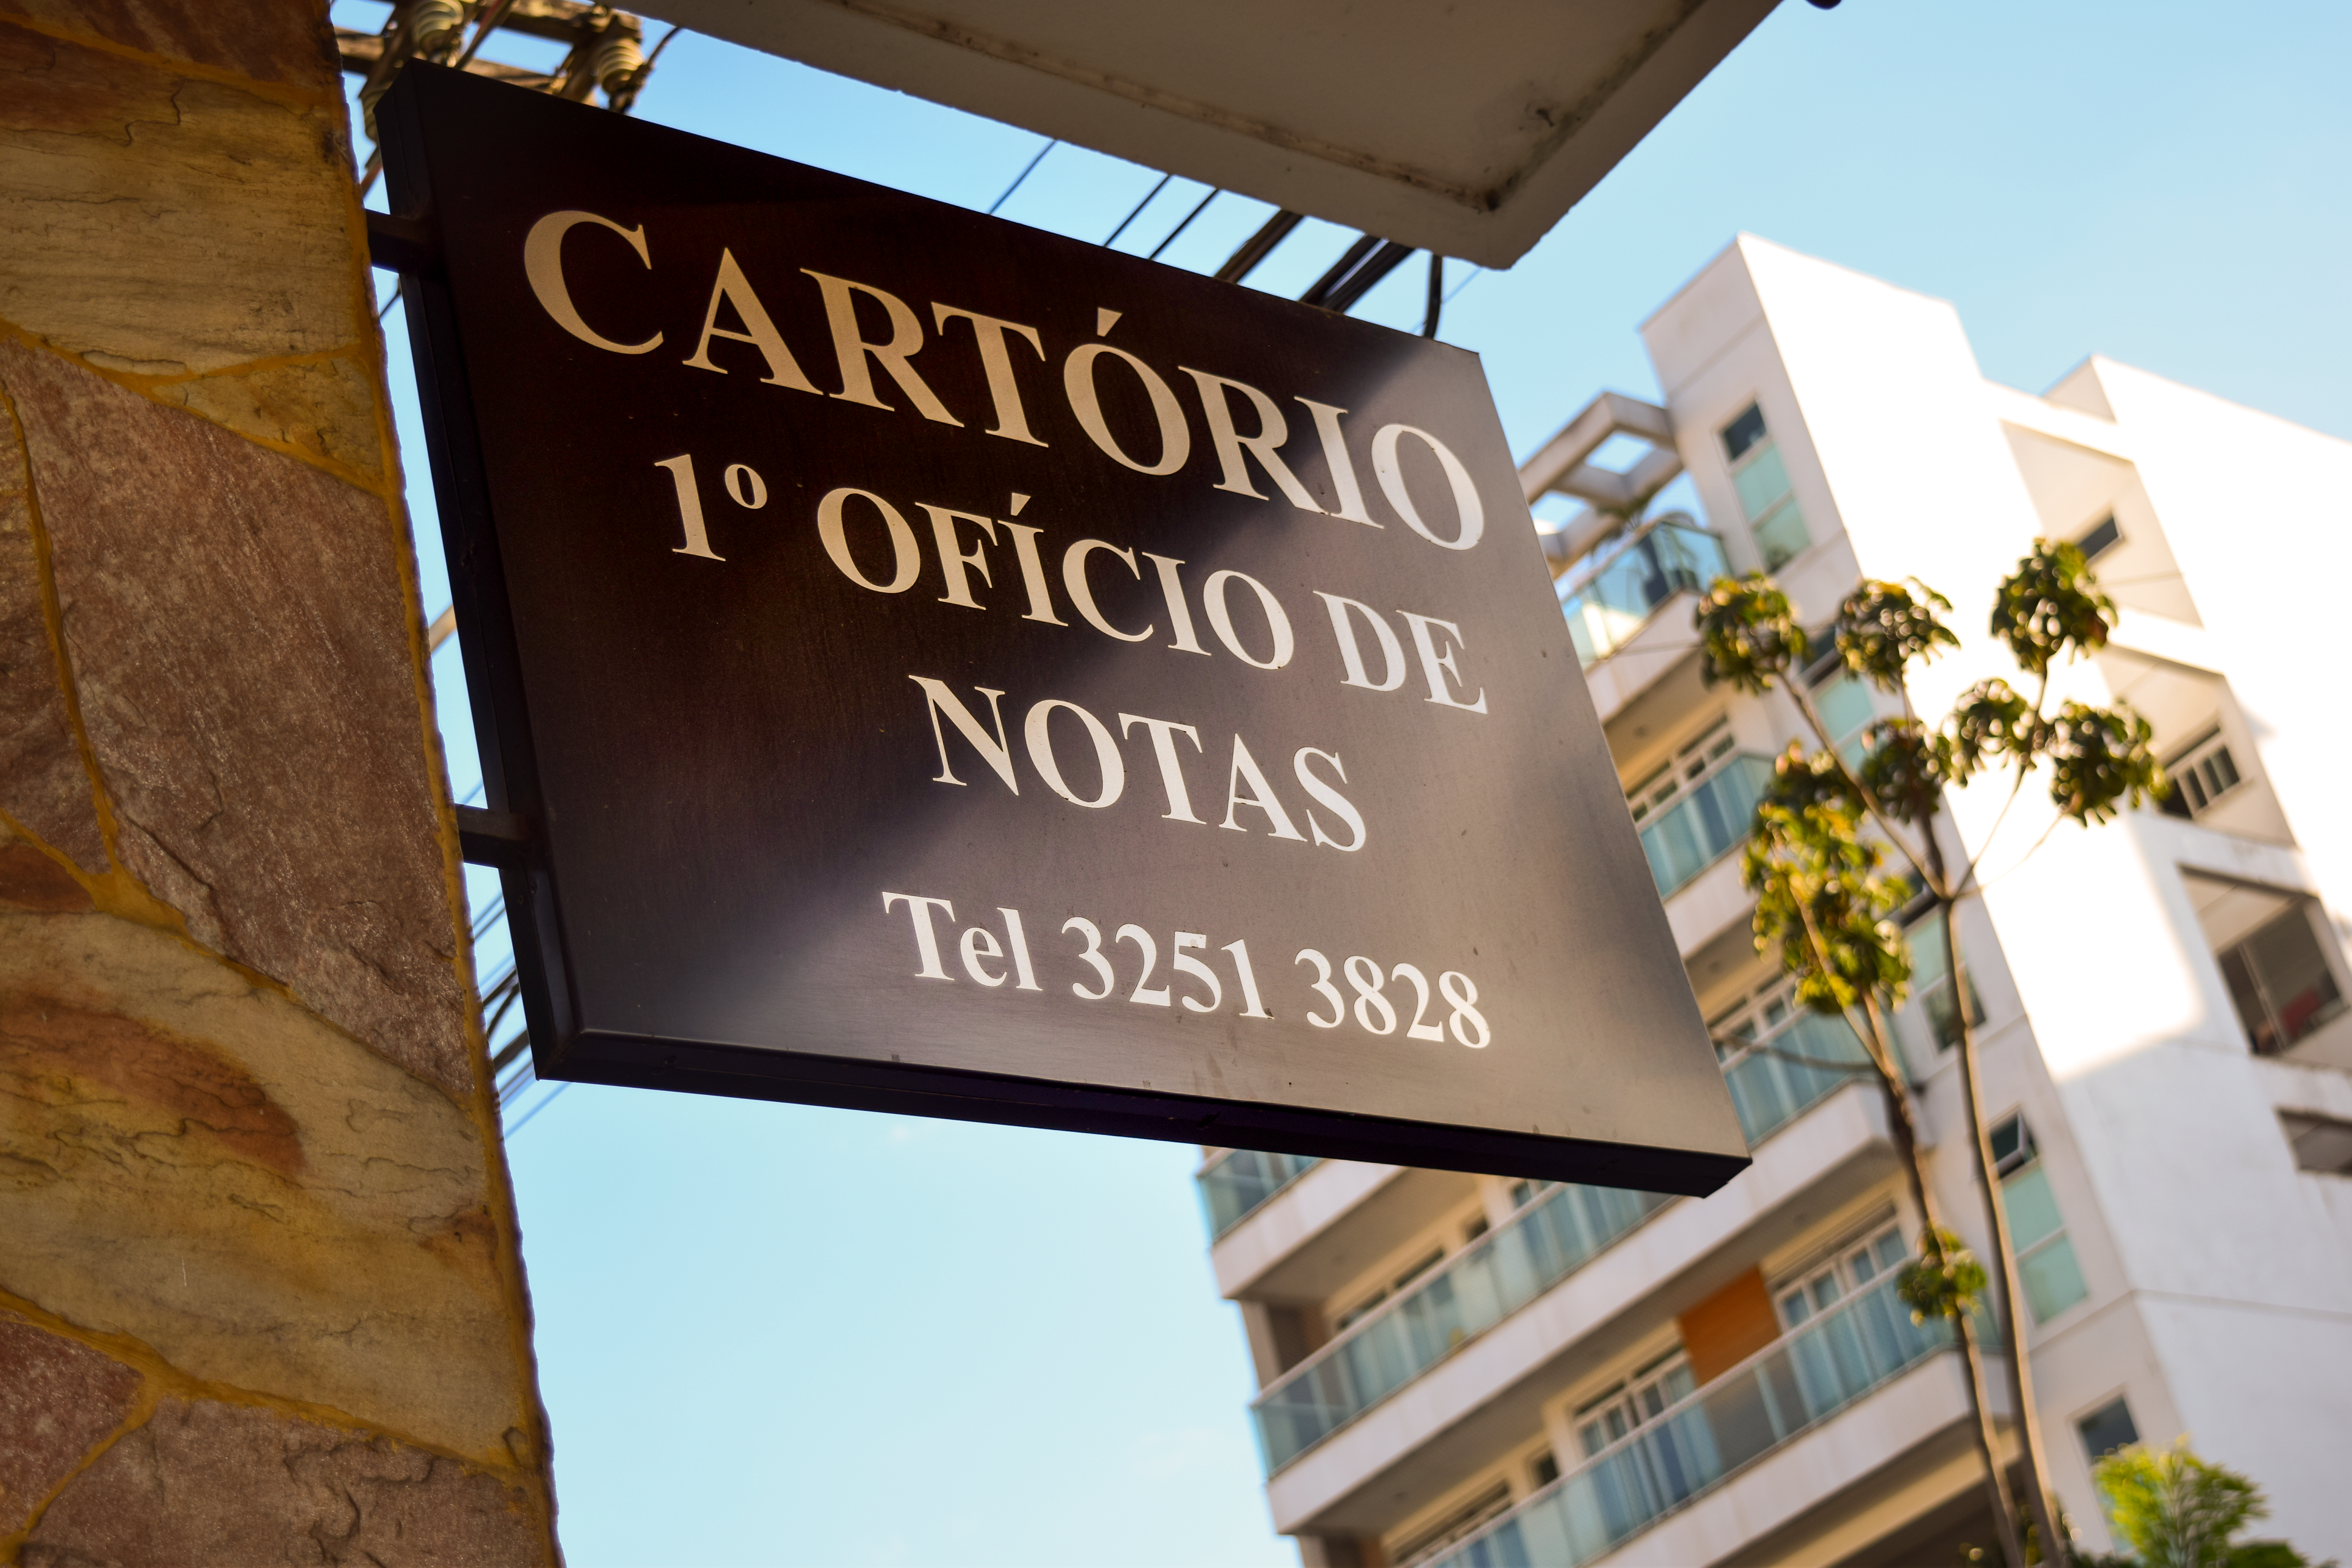 Cartório De Notas De Santos Dumont Completa 132 Anos De História, Sendo O Pioneiro Em Escrituras Eletrônicas Na Cidade